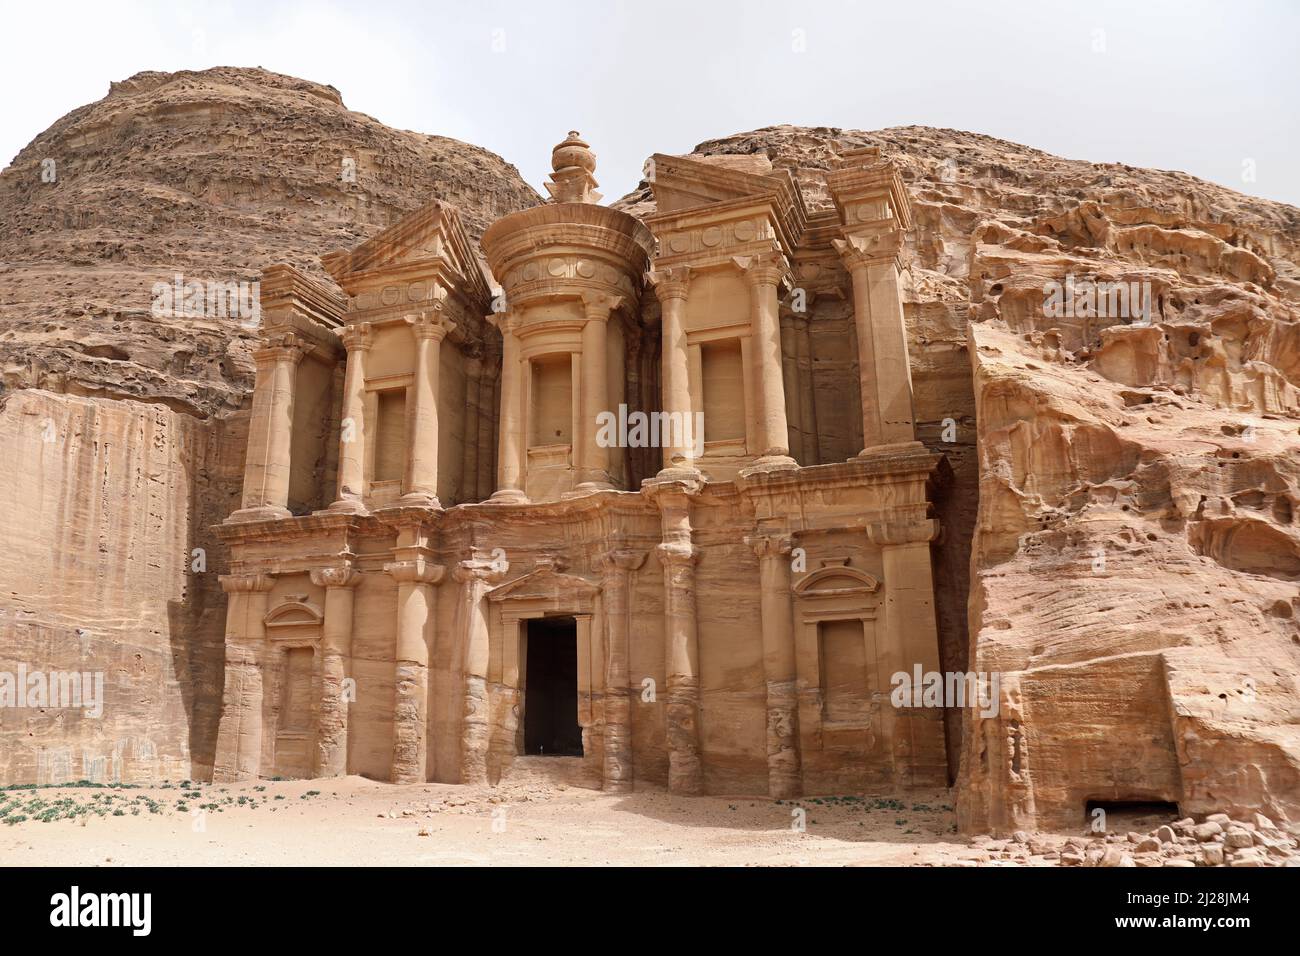 The Monastery at Petra Stock Photo